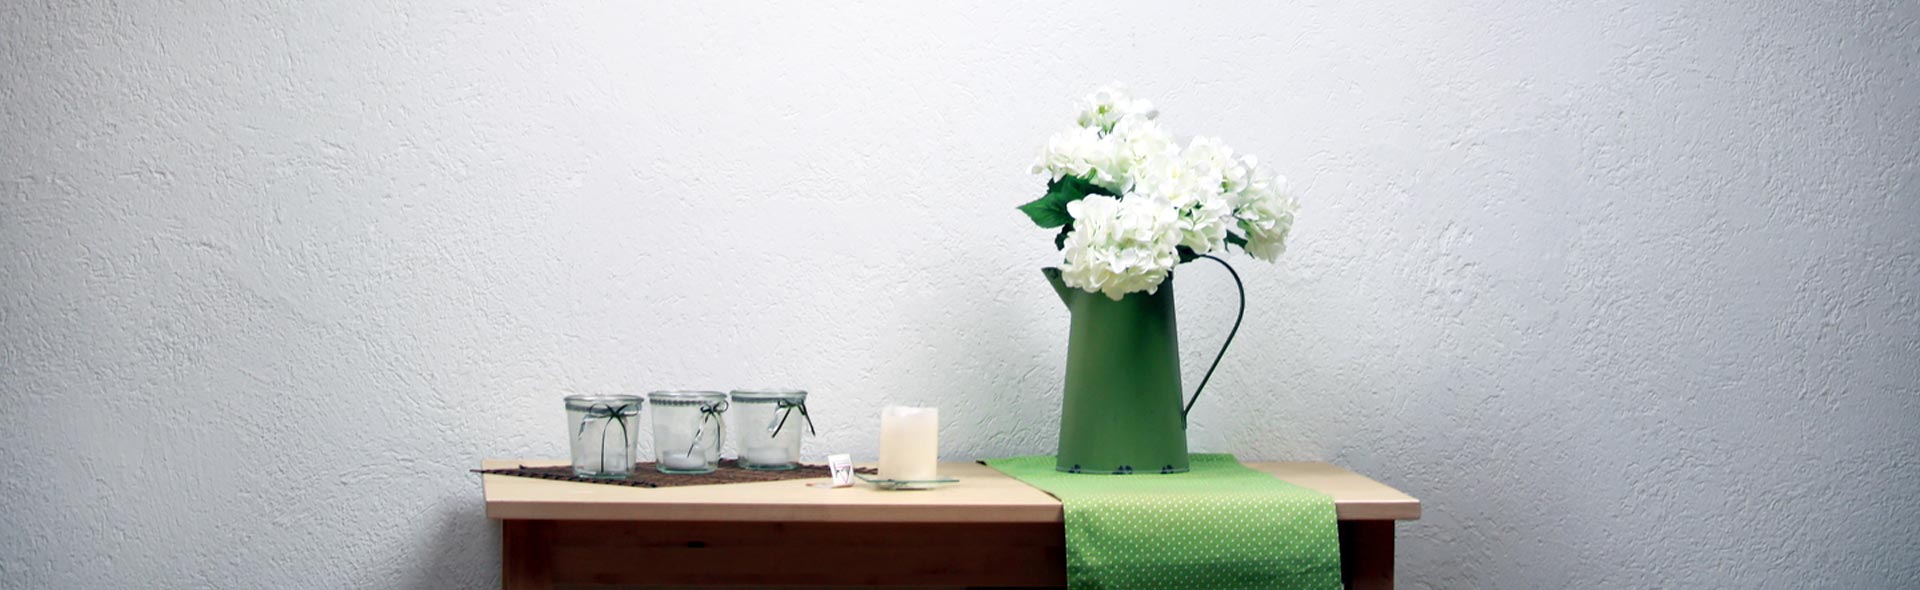 OJC Kommunität – Stilleben. Naturtisch mit Gläsern, Kanne, Kerze und weißen Blumen.